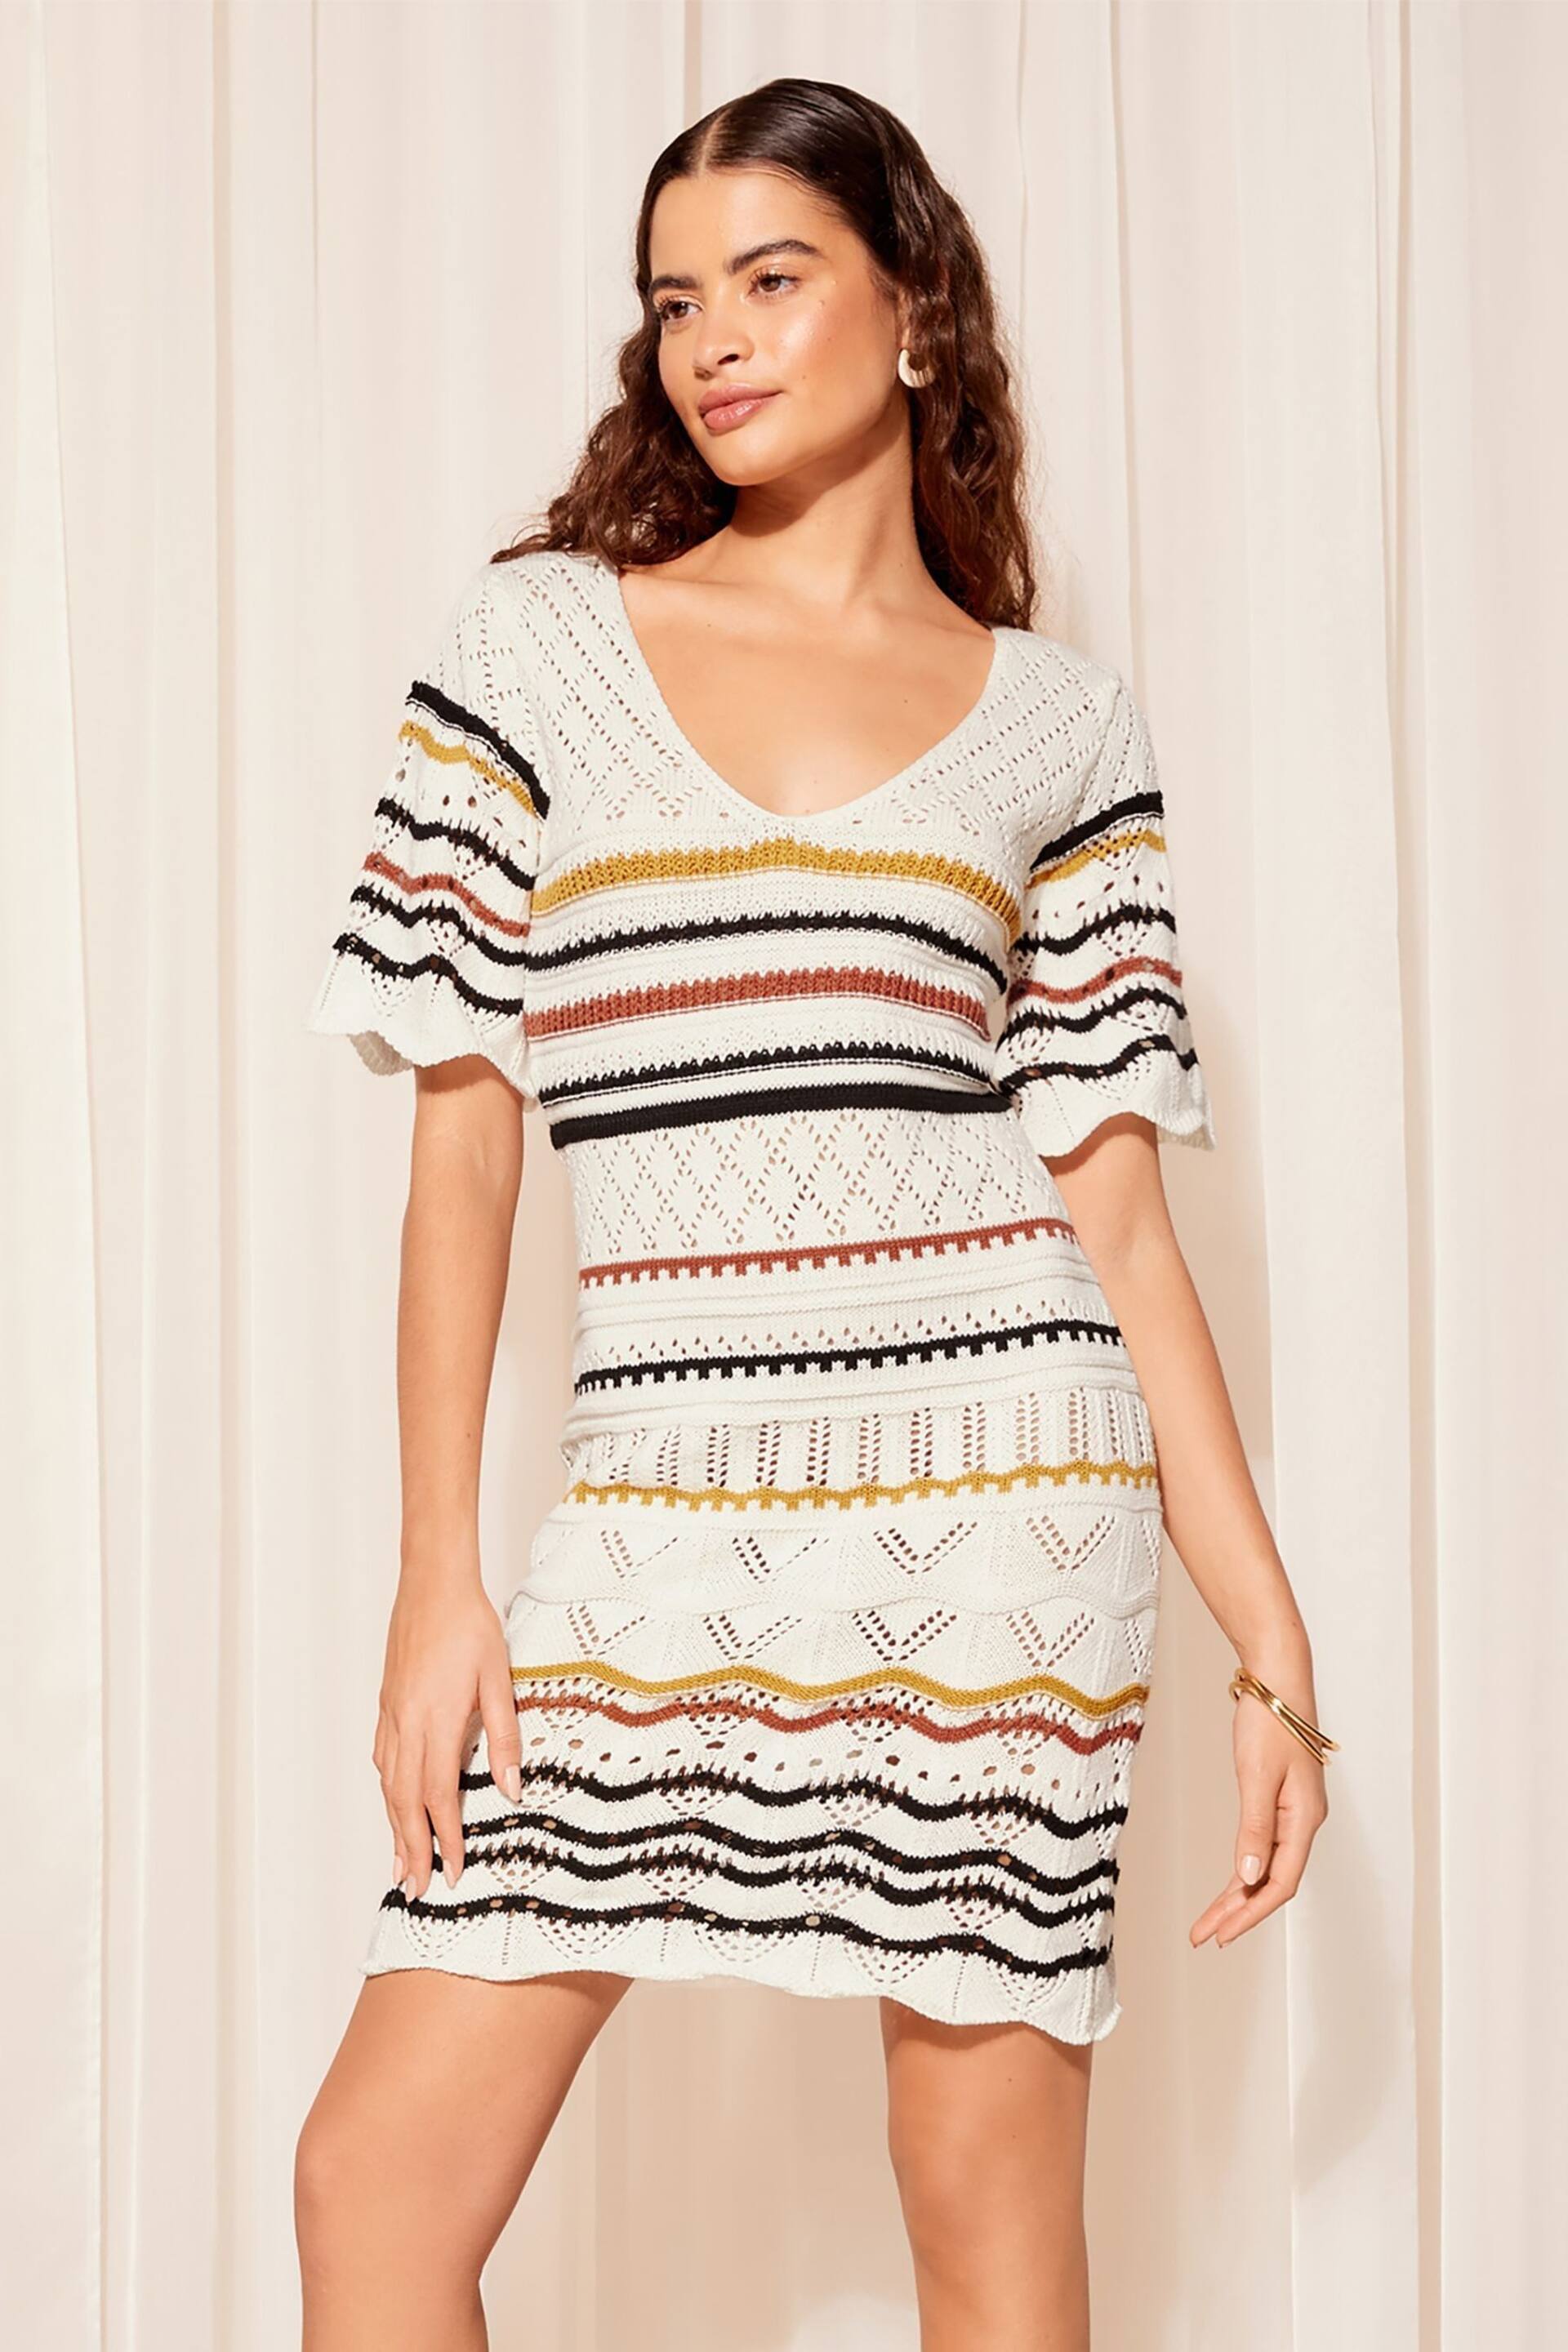 Friends Like These White Multi V Neck Crochet Mini Dress - Image 1 of 4